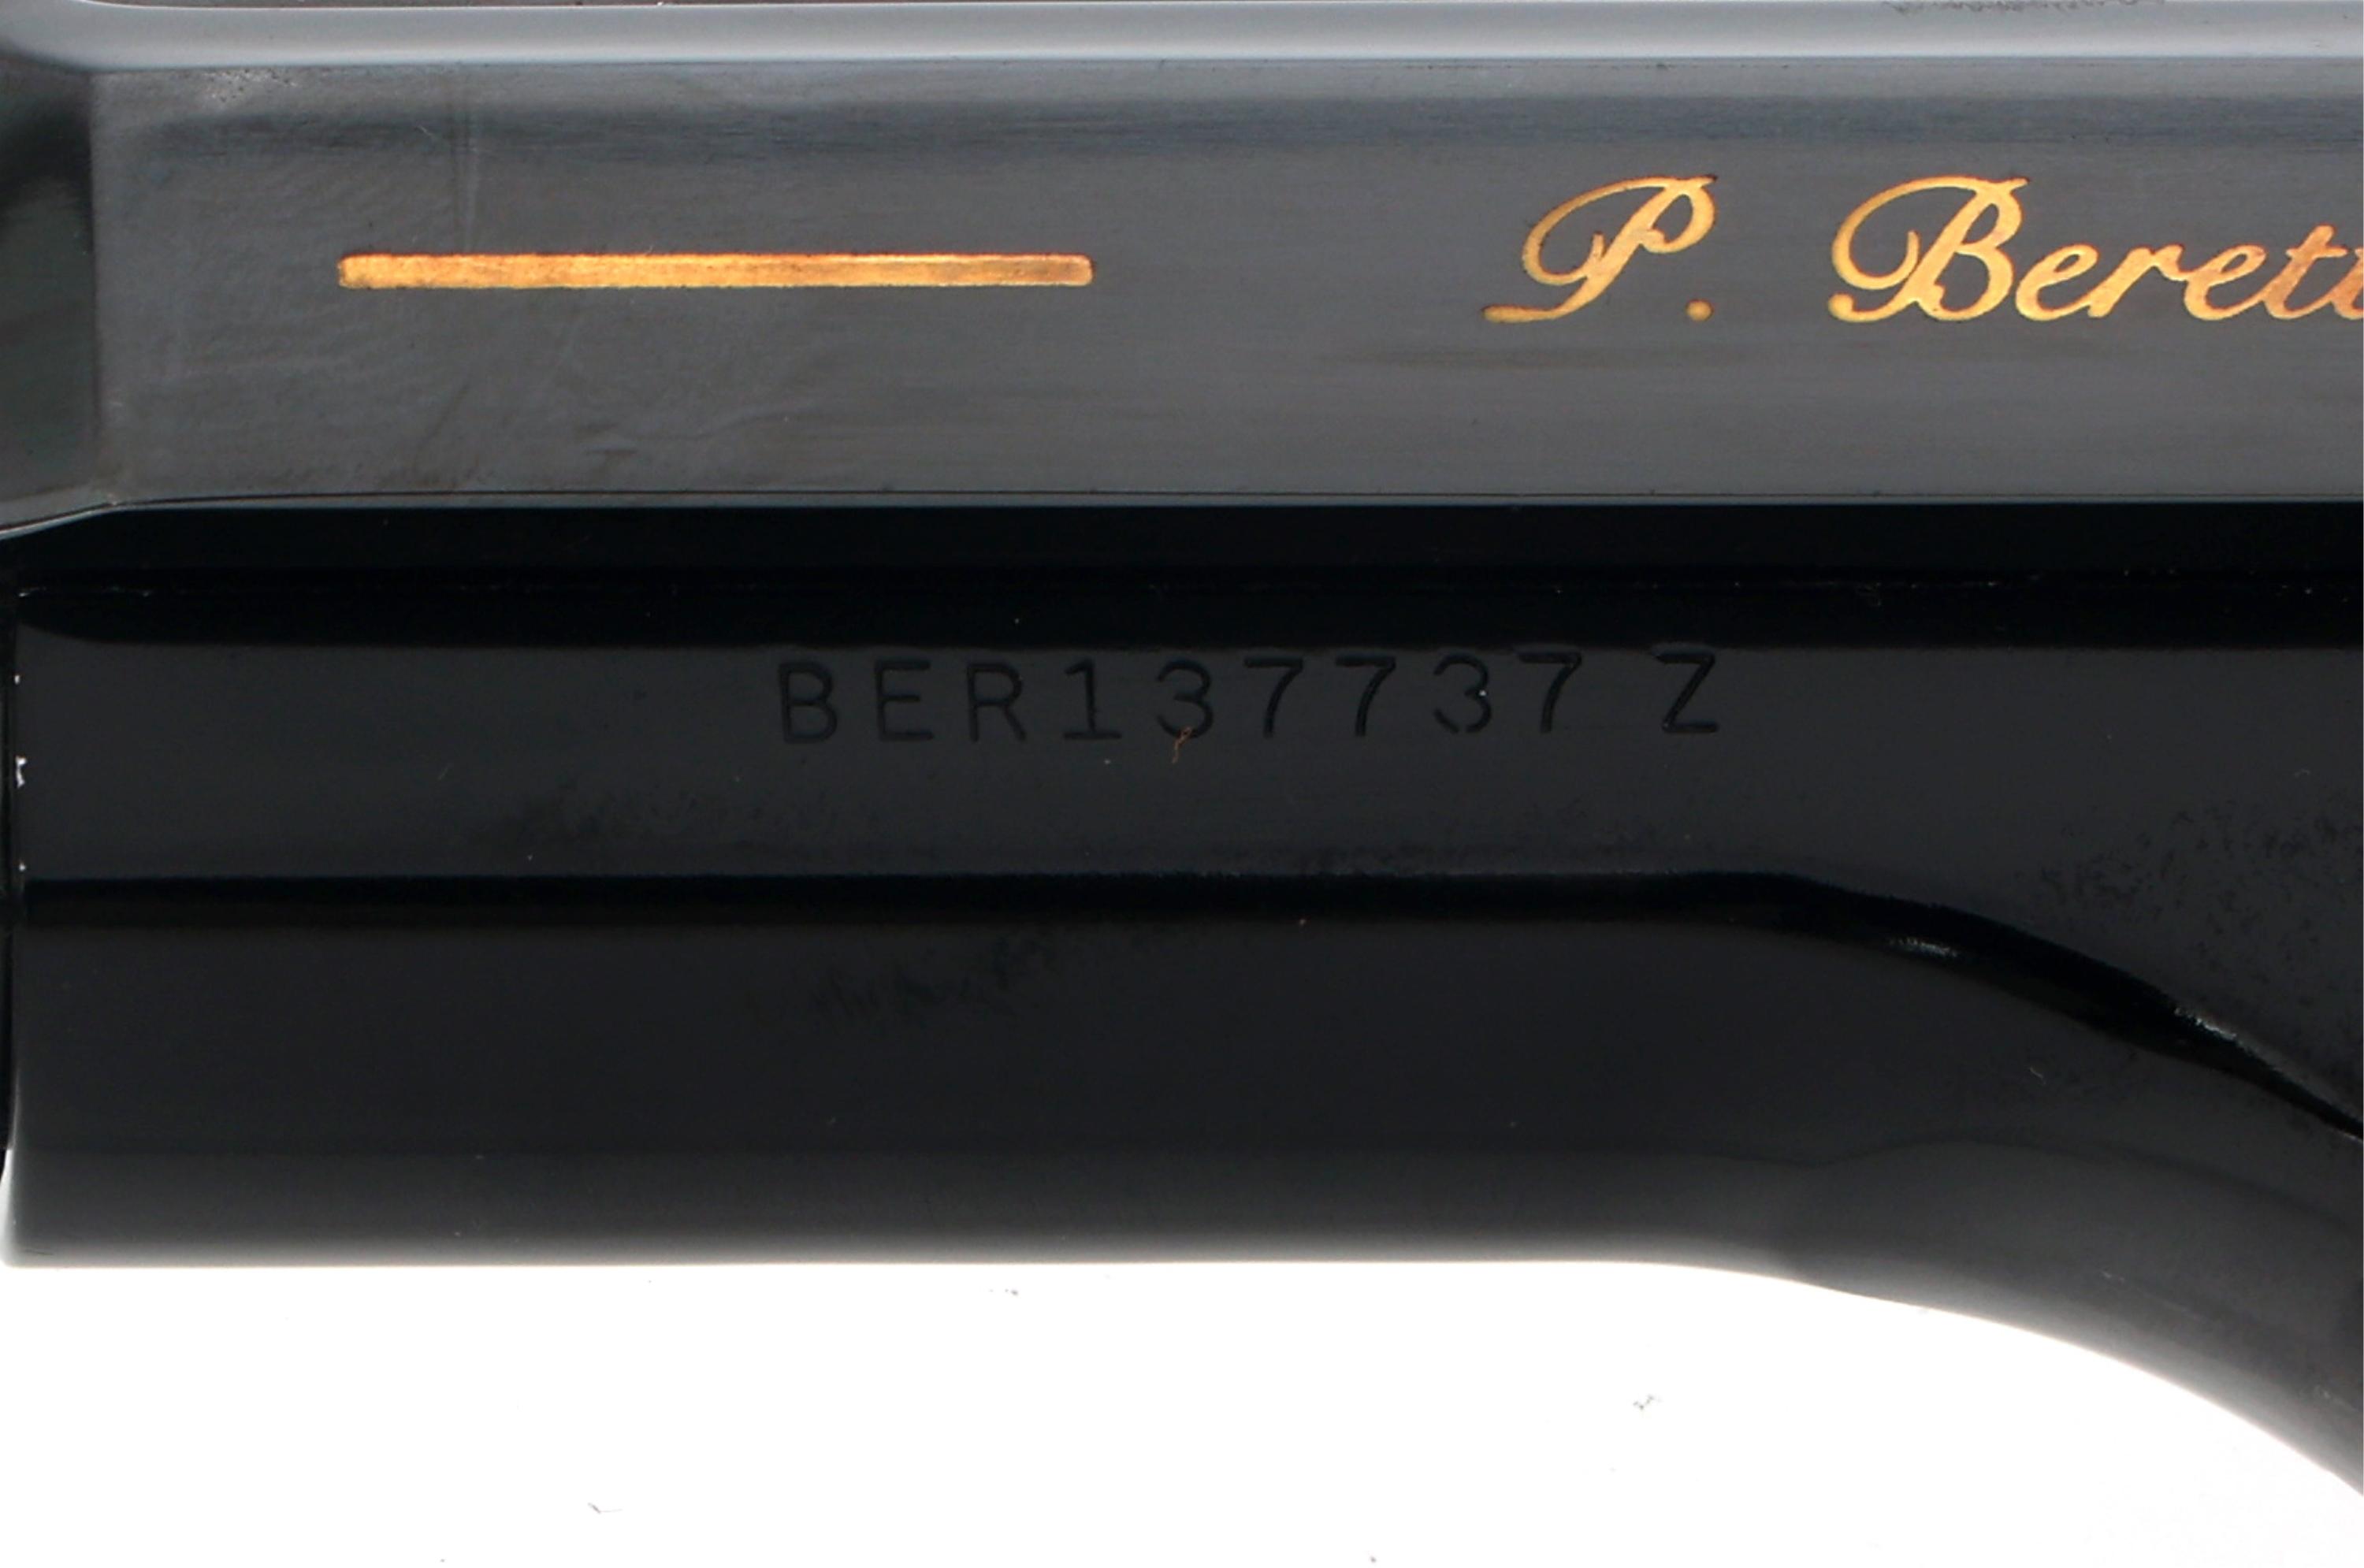 BERETTA MODEL 92FS LIMITED 9x19mm CALIBER PISTOL